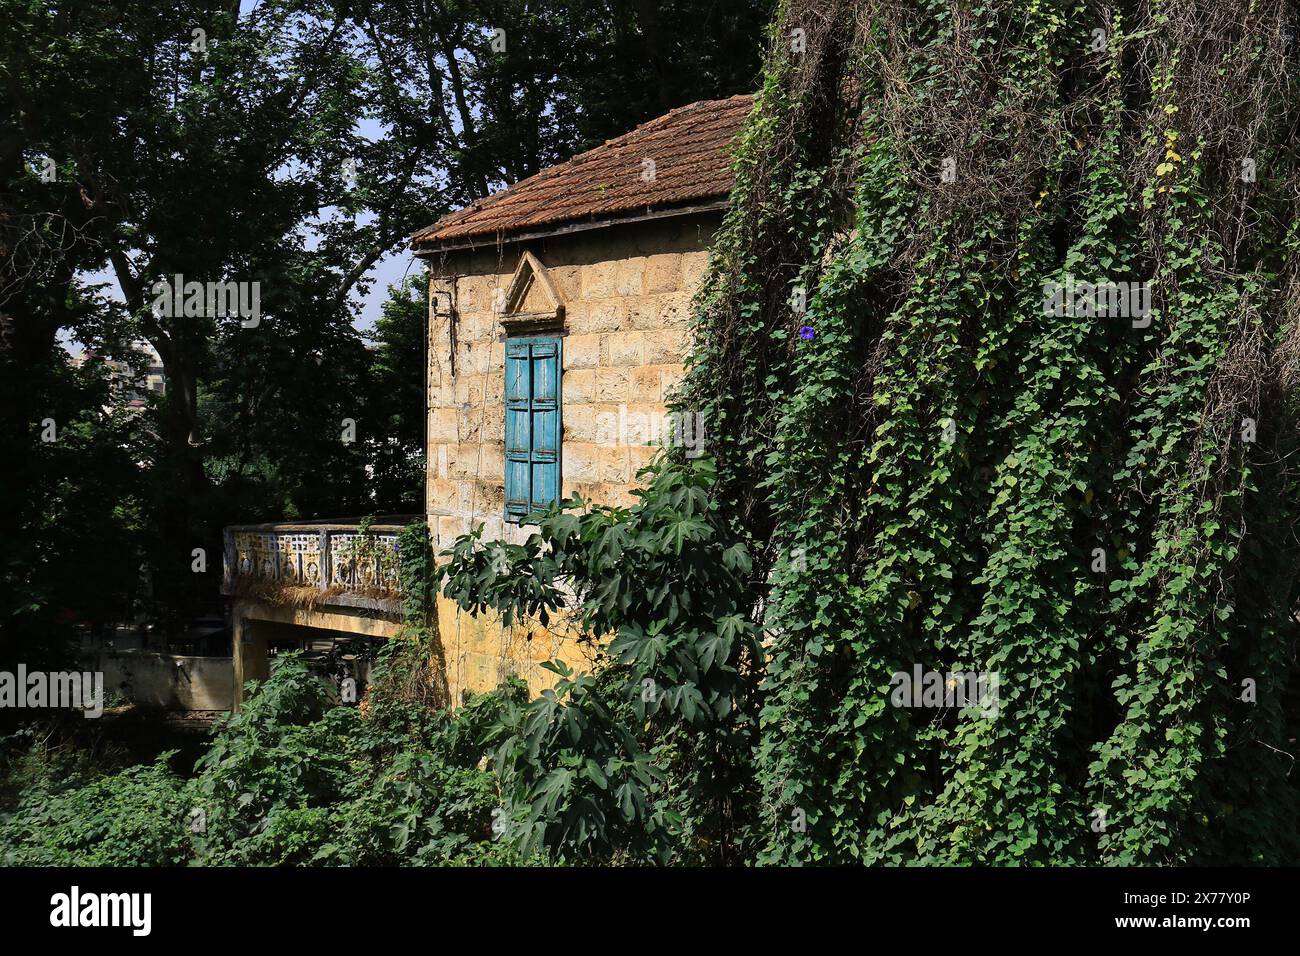 Une maison libanaise traditionnelle au coeur de la nature verdoyante. Banque D'Images